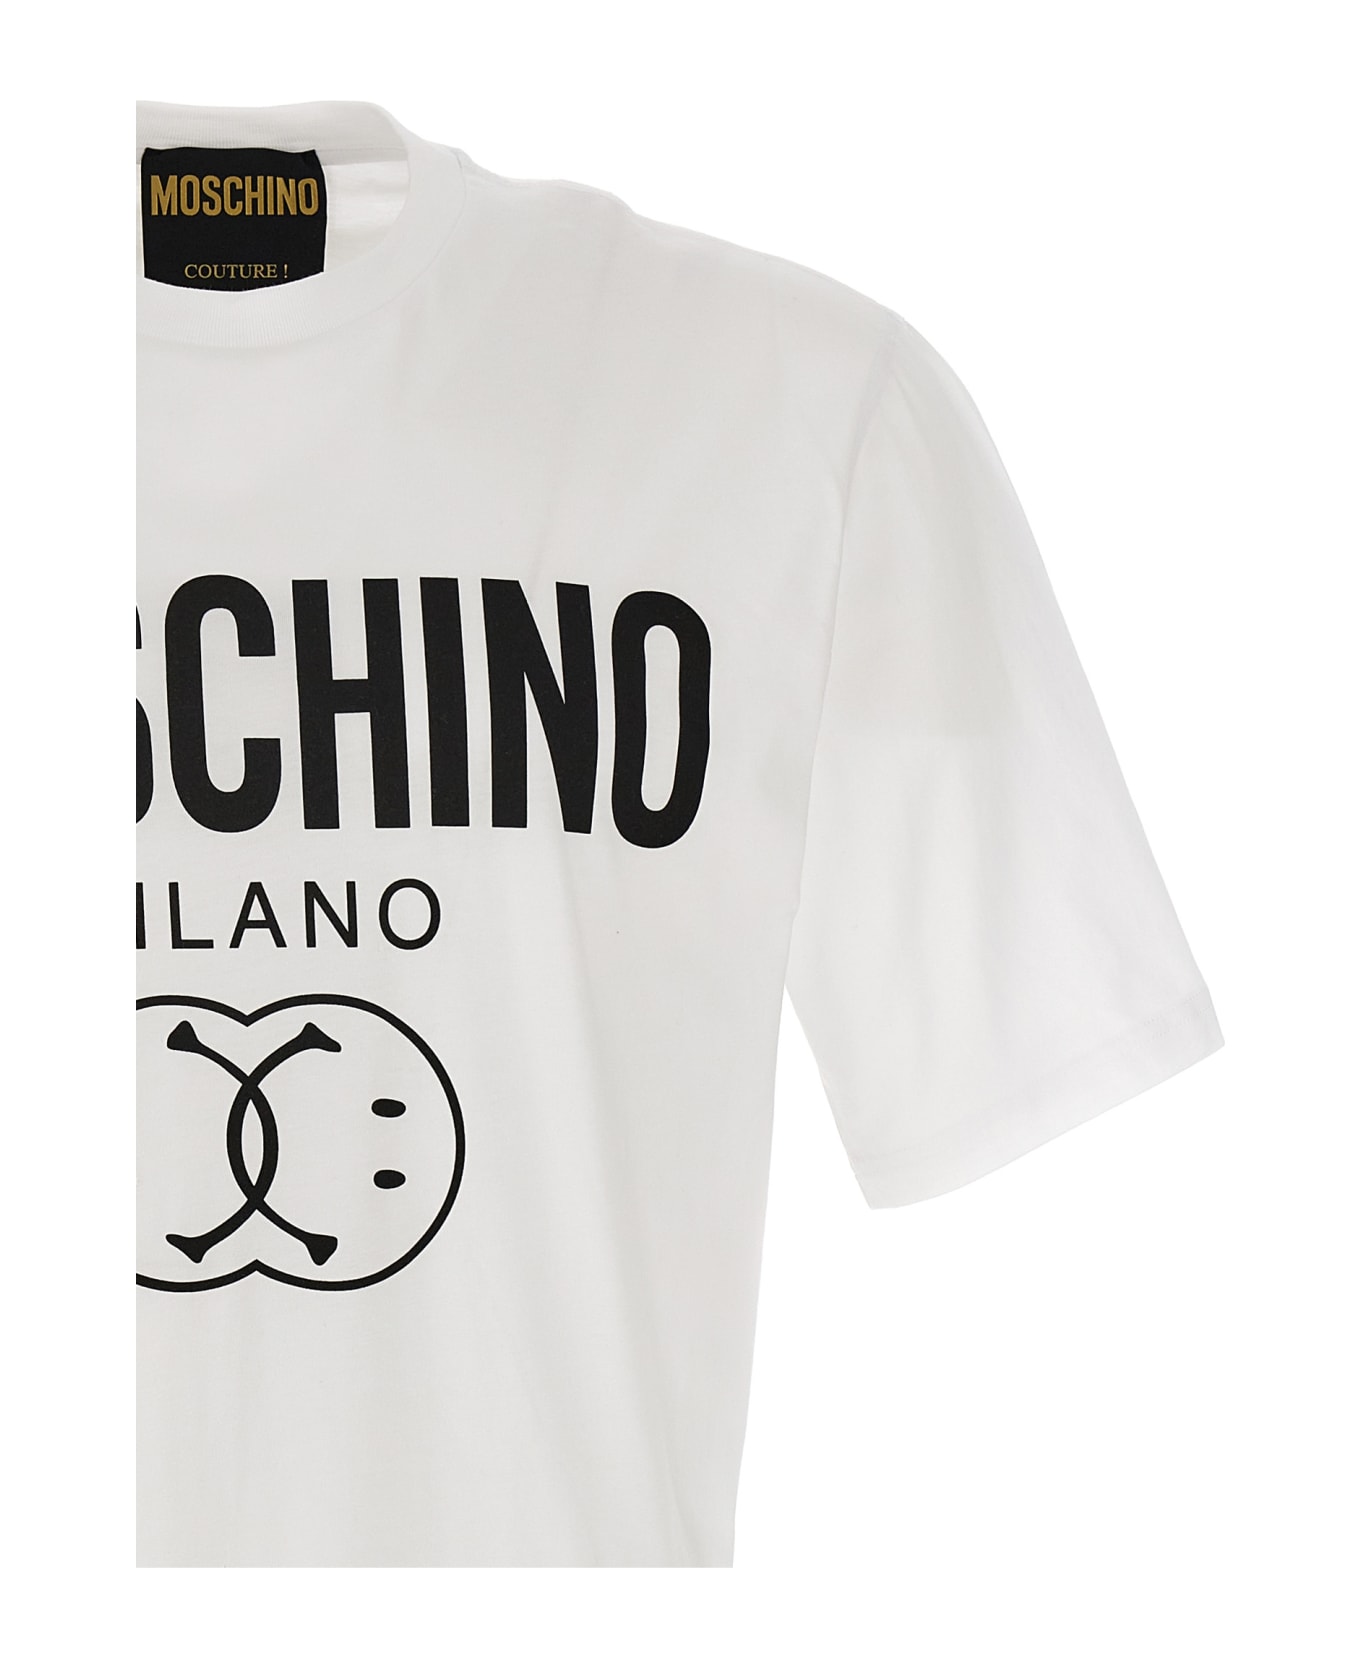 Moschino 'double Smile' T-shirt - White/Black